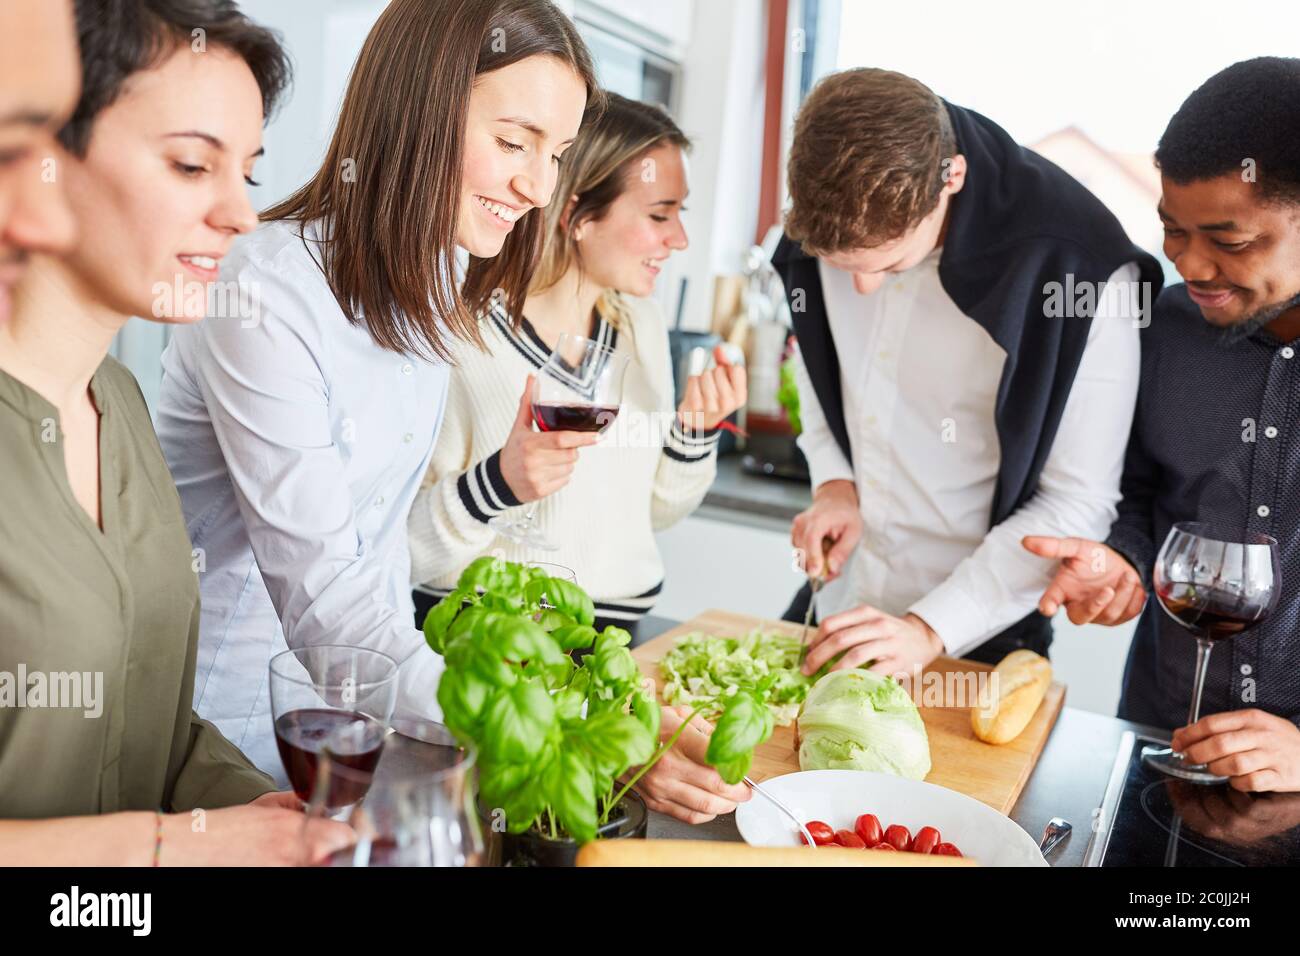 Groupe d'amis dans la cuisine de couper la salade pour un repas ensemble Banque D'Images